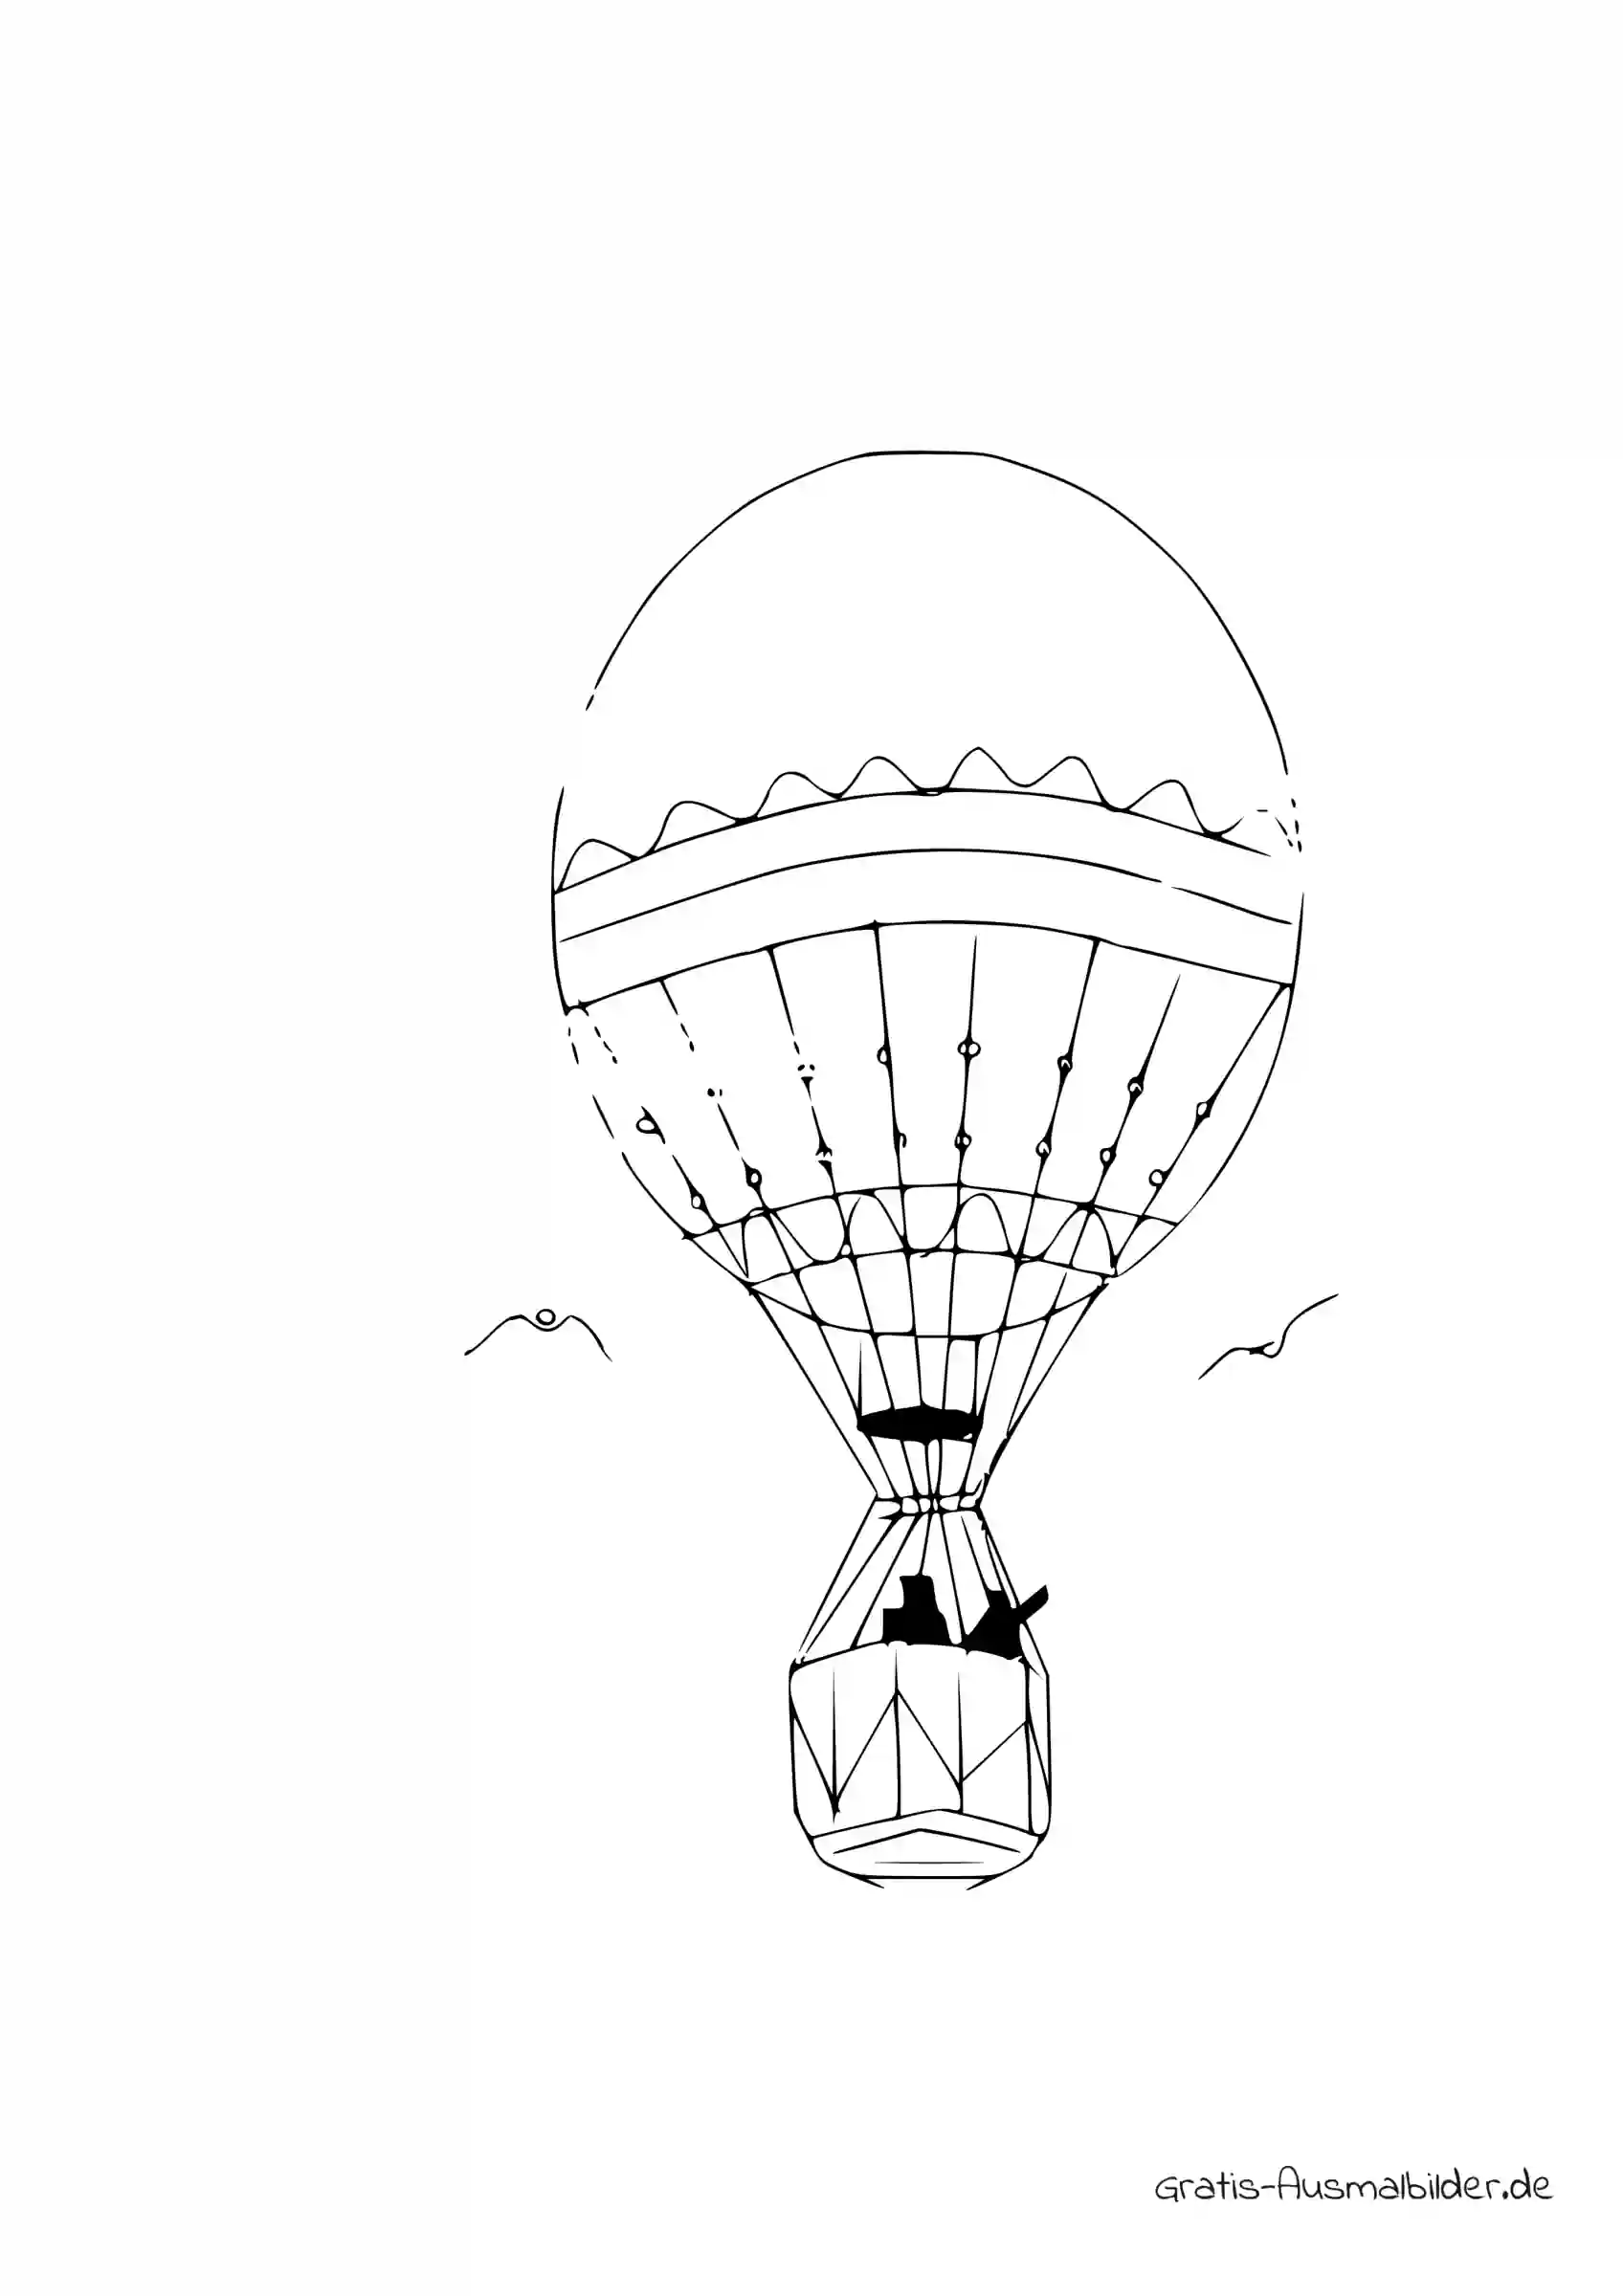 Ausmalbild Heißluftballon mit Passagiere